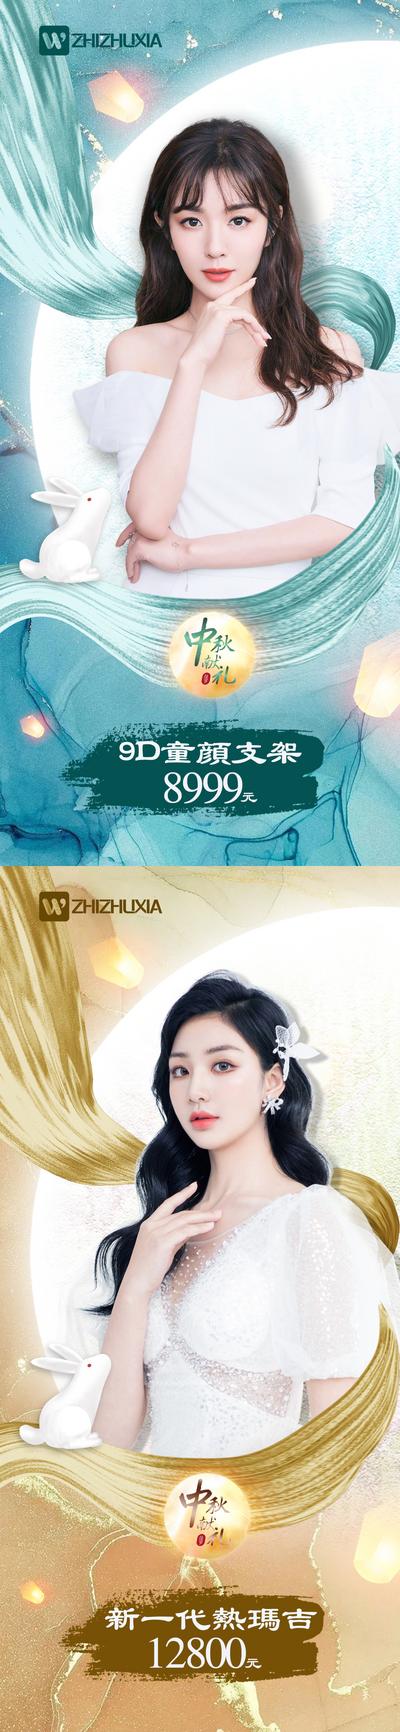 南门网 海报 中国传统节日 中秋节 医美 整形 人物